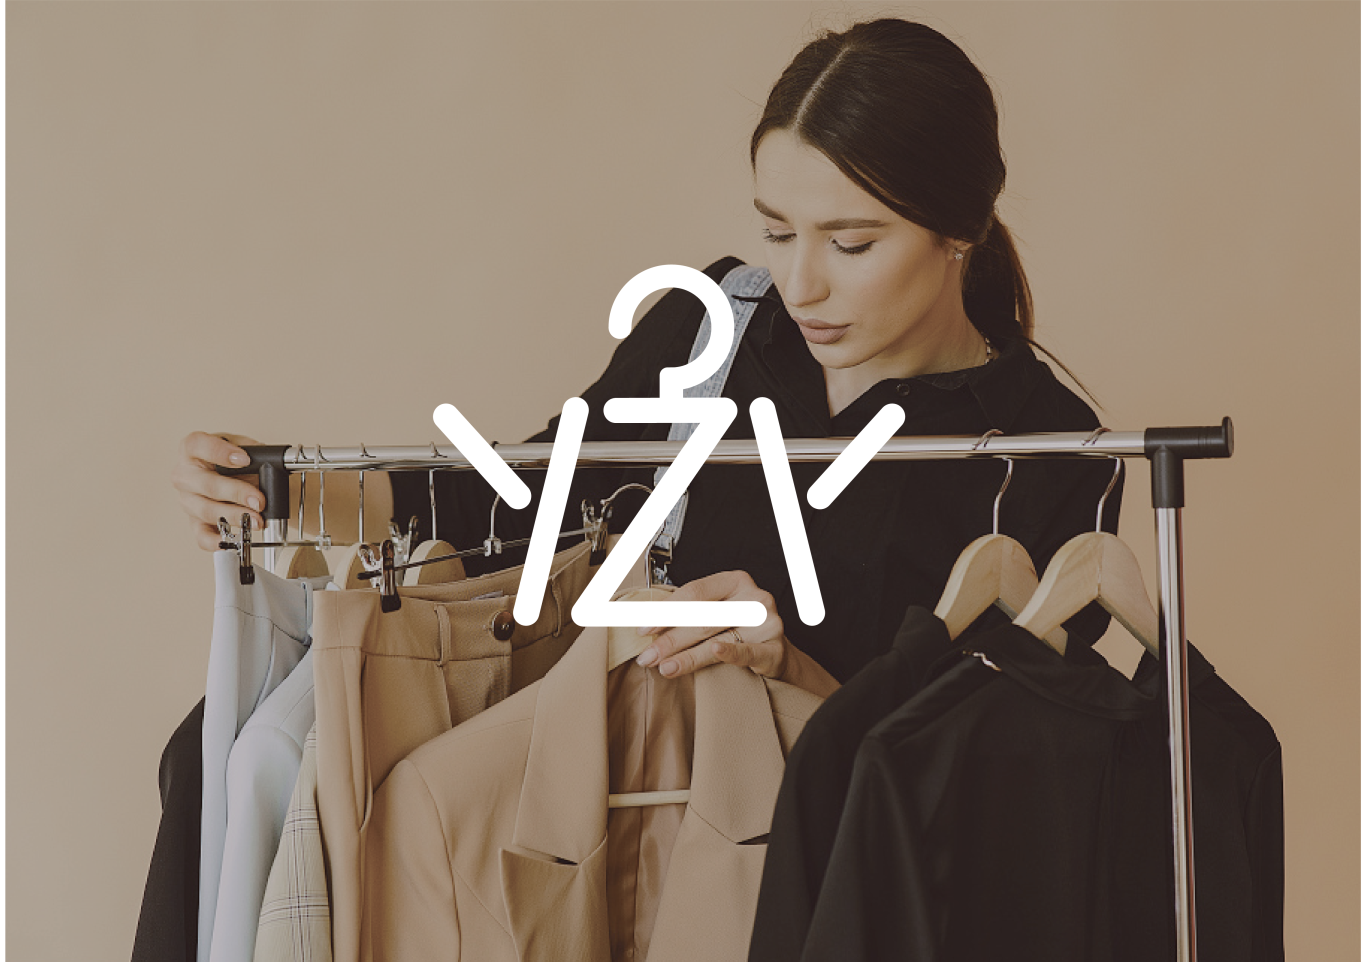 yzy服装logo图1